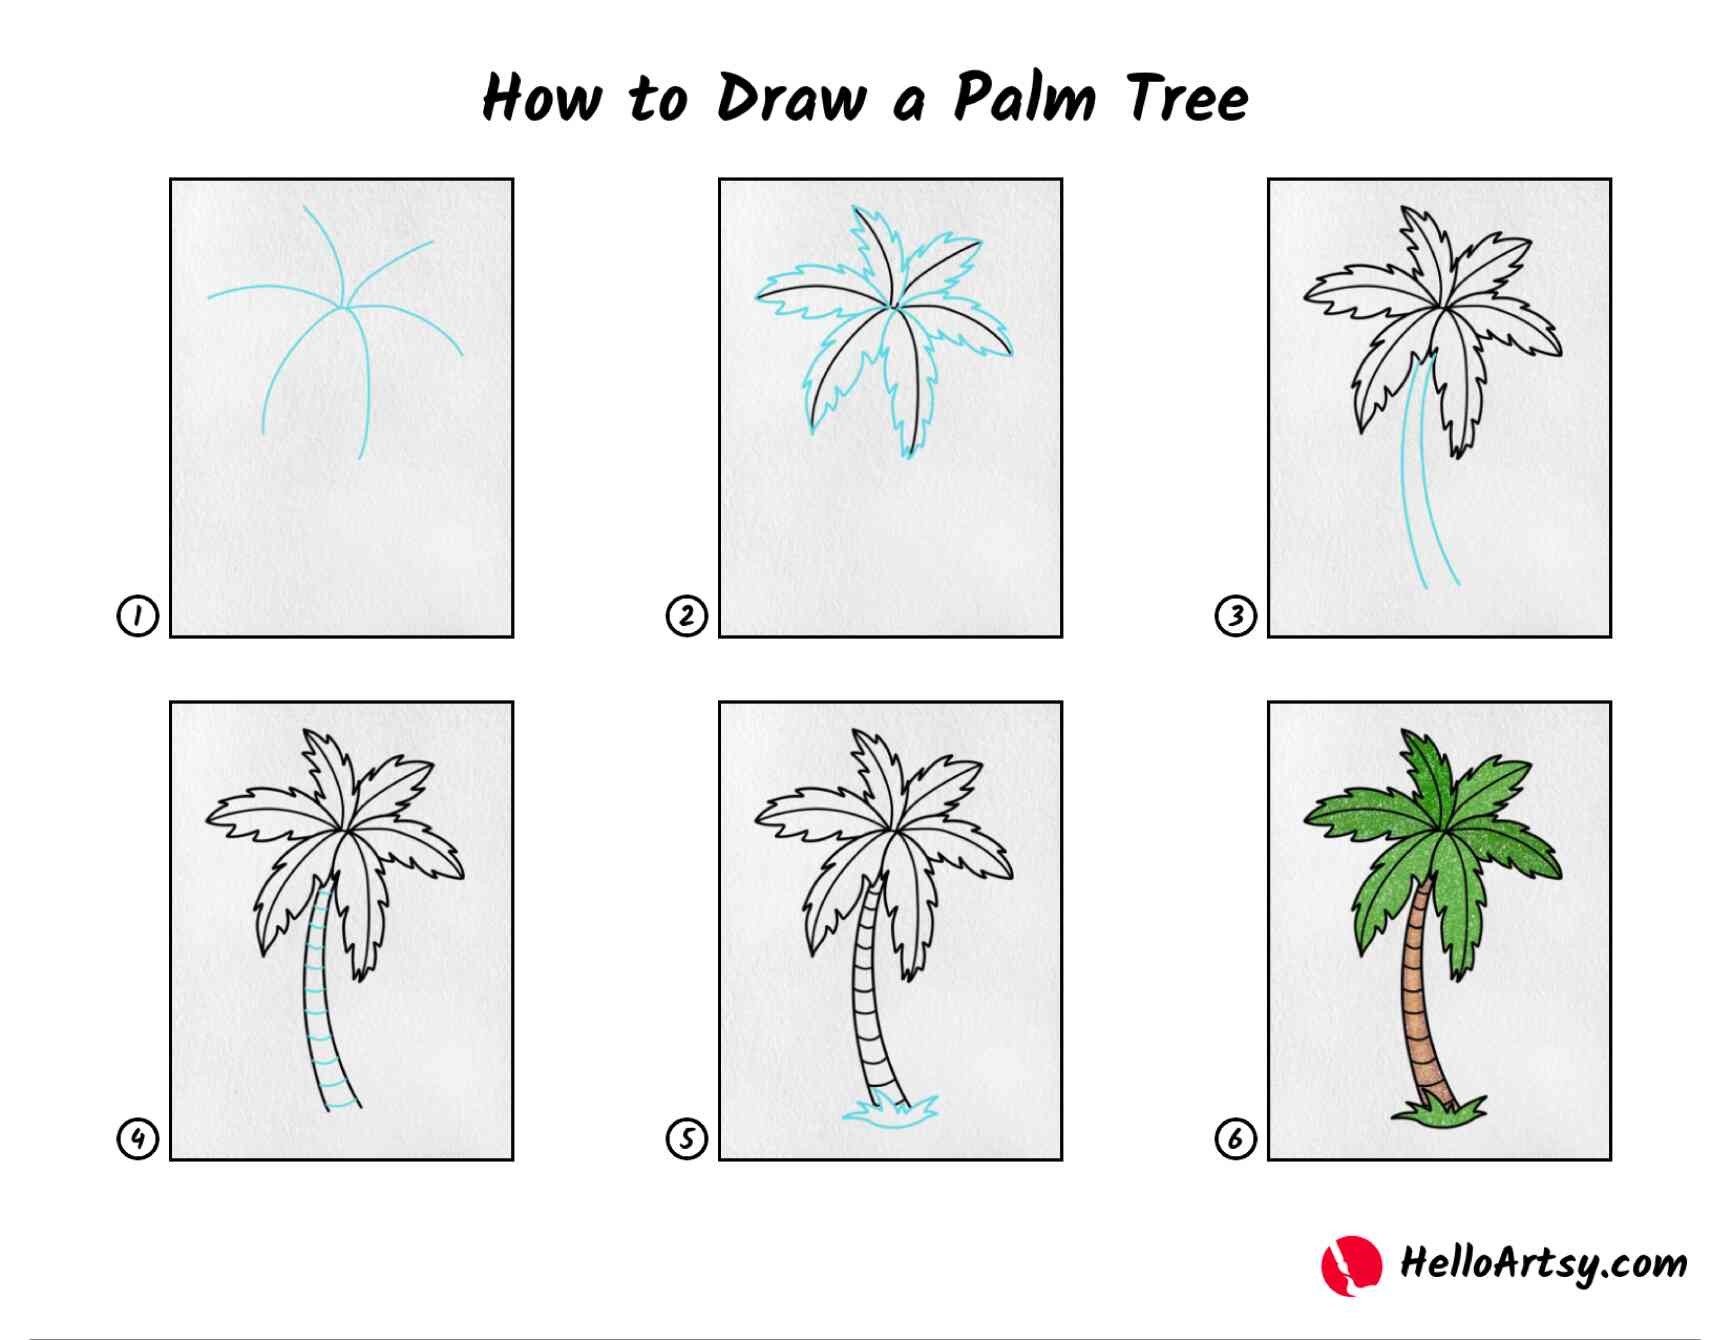 Palmen-Idee 3 zeichnen ideen